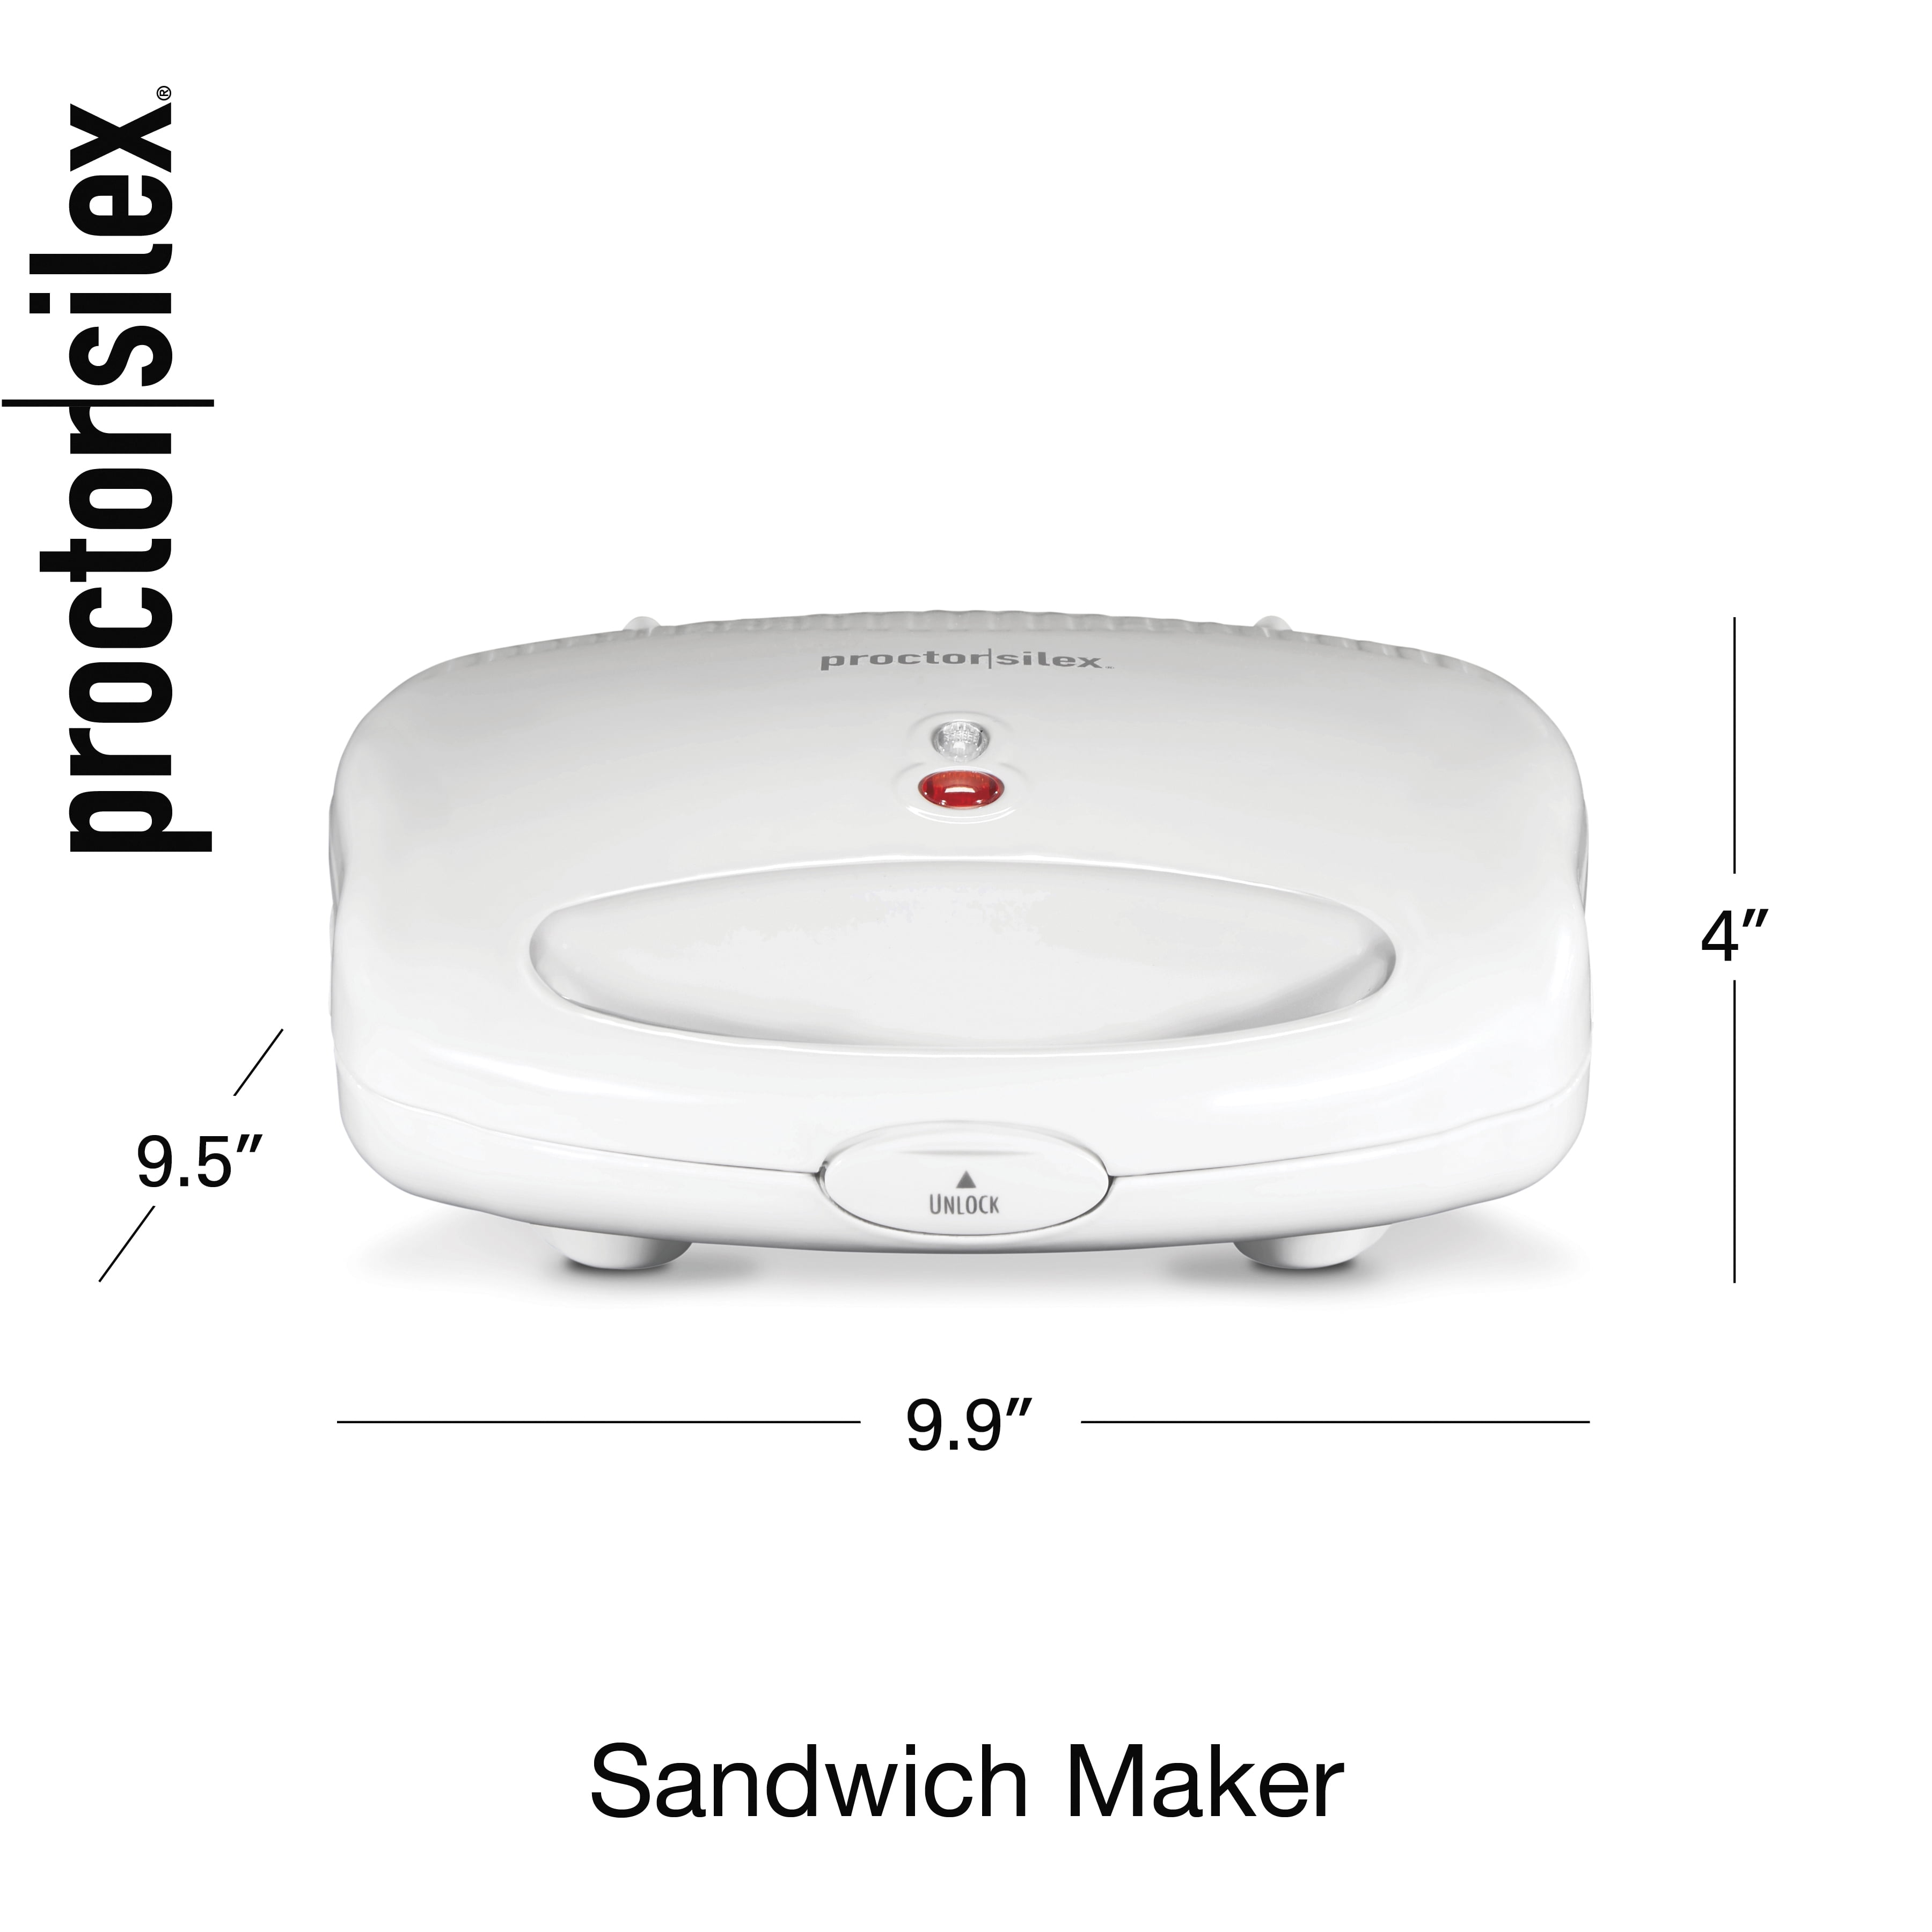 Deluxe Hot Sandwich Maker - Model 25415